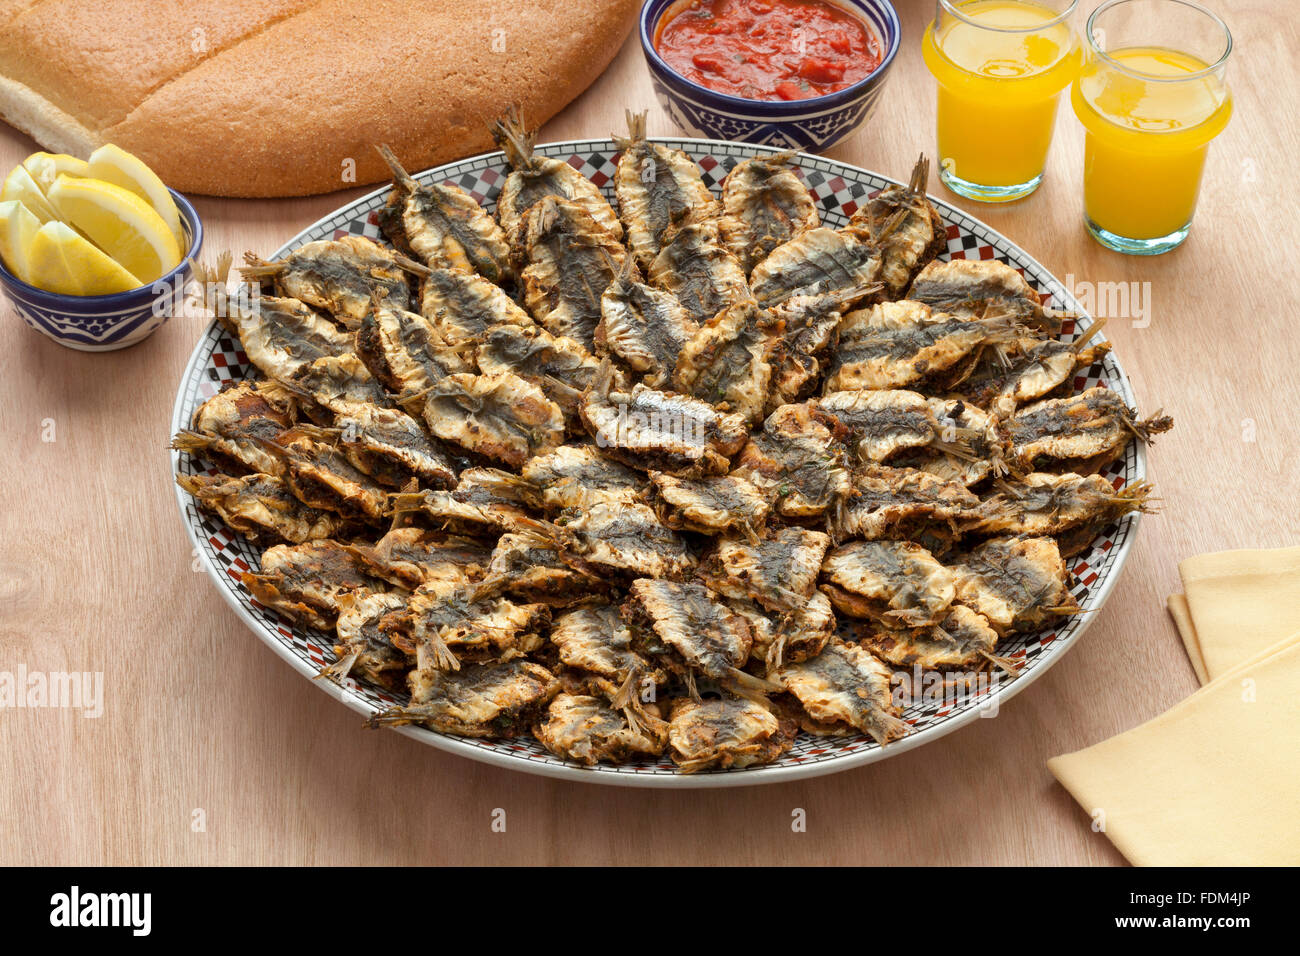 Plato con sardinas rellenas fritas marroquí,salsa y pan Foto de stock